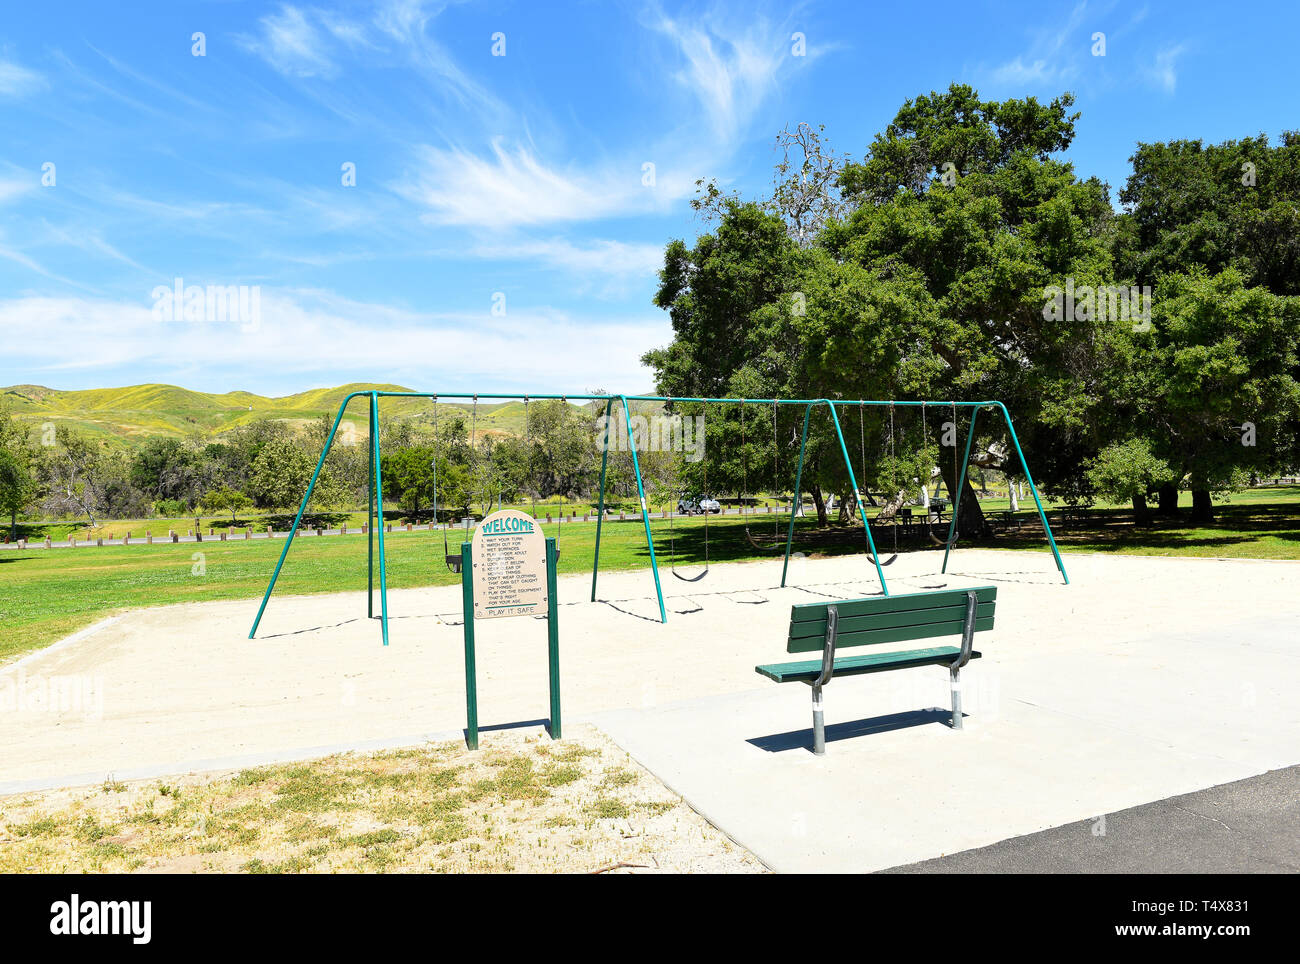 ORANGE, Kalifornien - 18. APRIL 2019: Bereich Spielplatz mit Schaukel an den Irvine Regional Park in Orange County, Kalifornien. Stockfoto